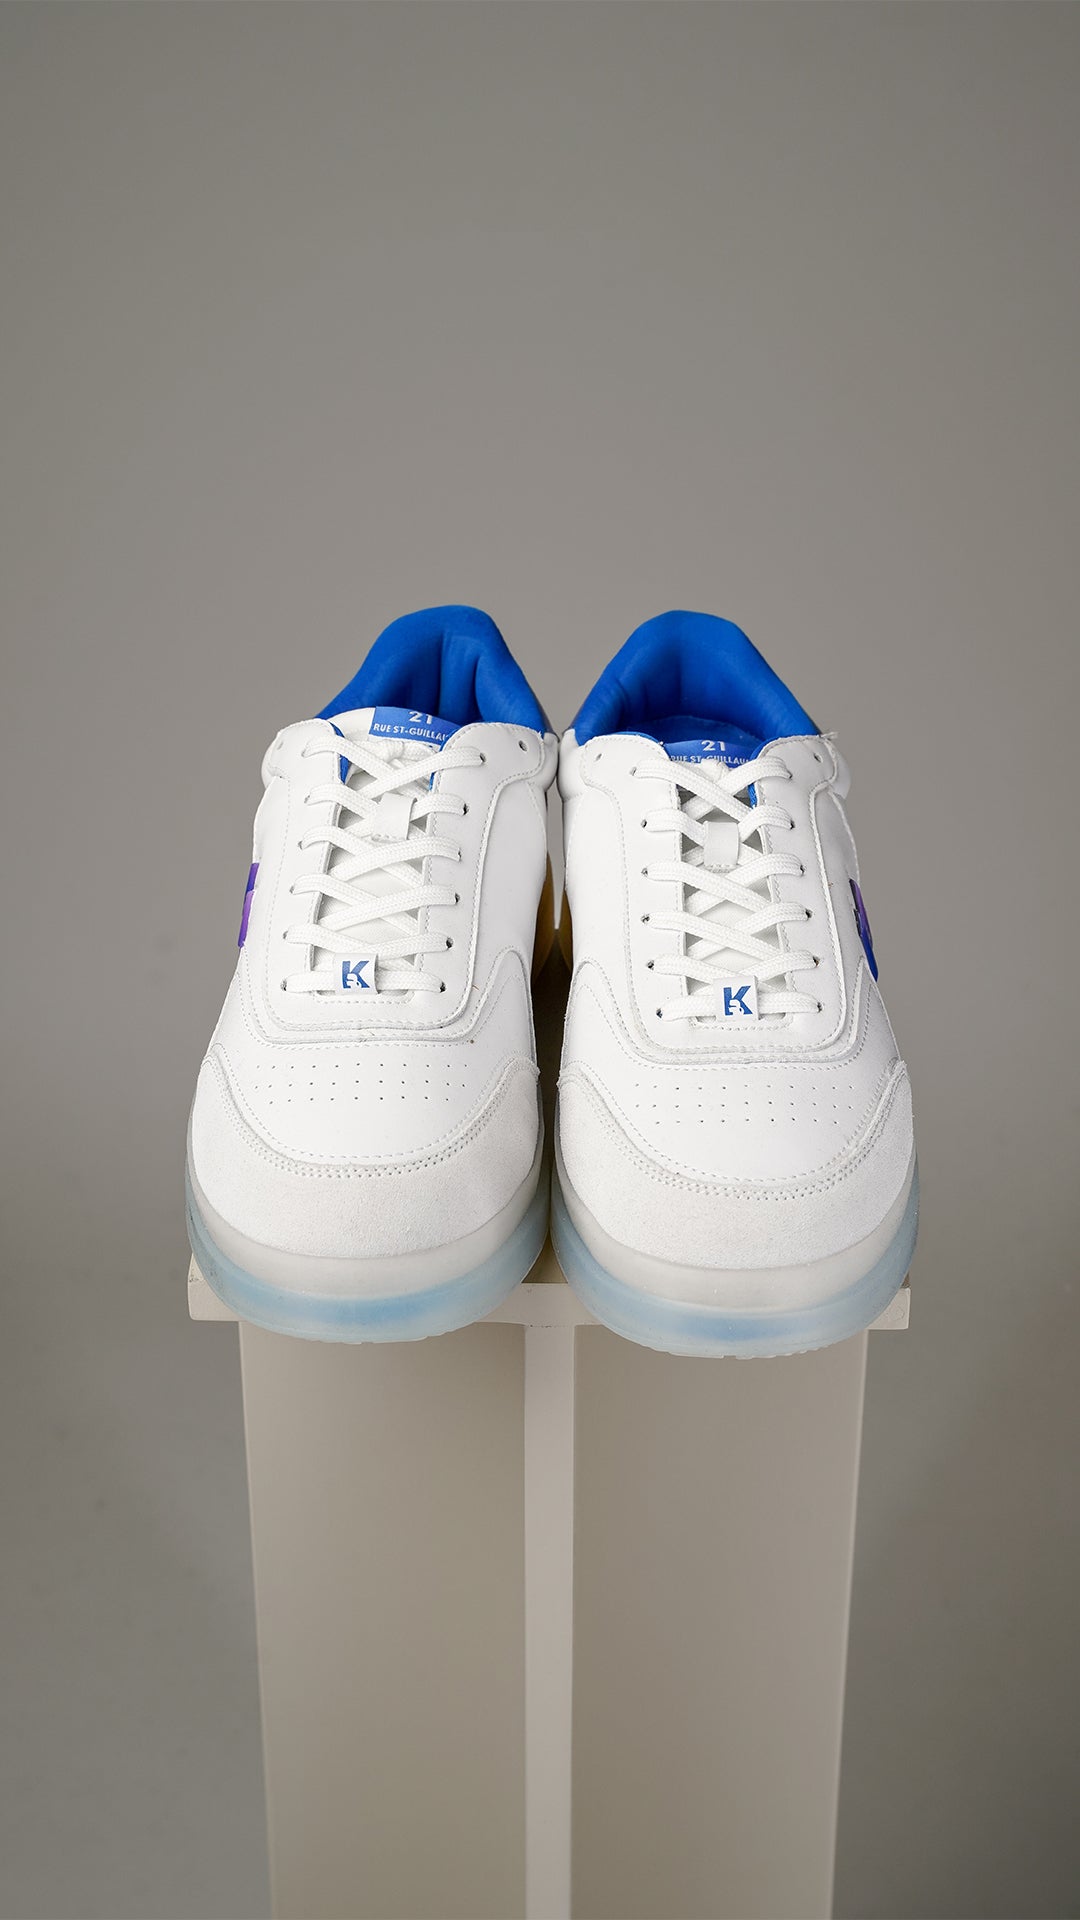 Karl Lagerfeld hvide sneakers med blå/lilla print